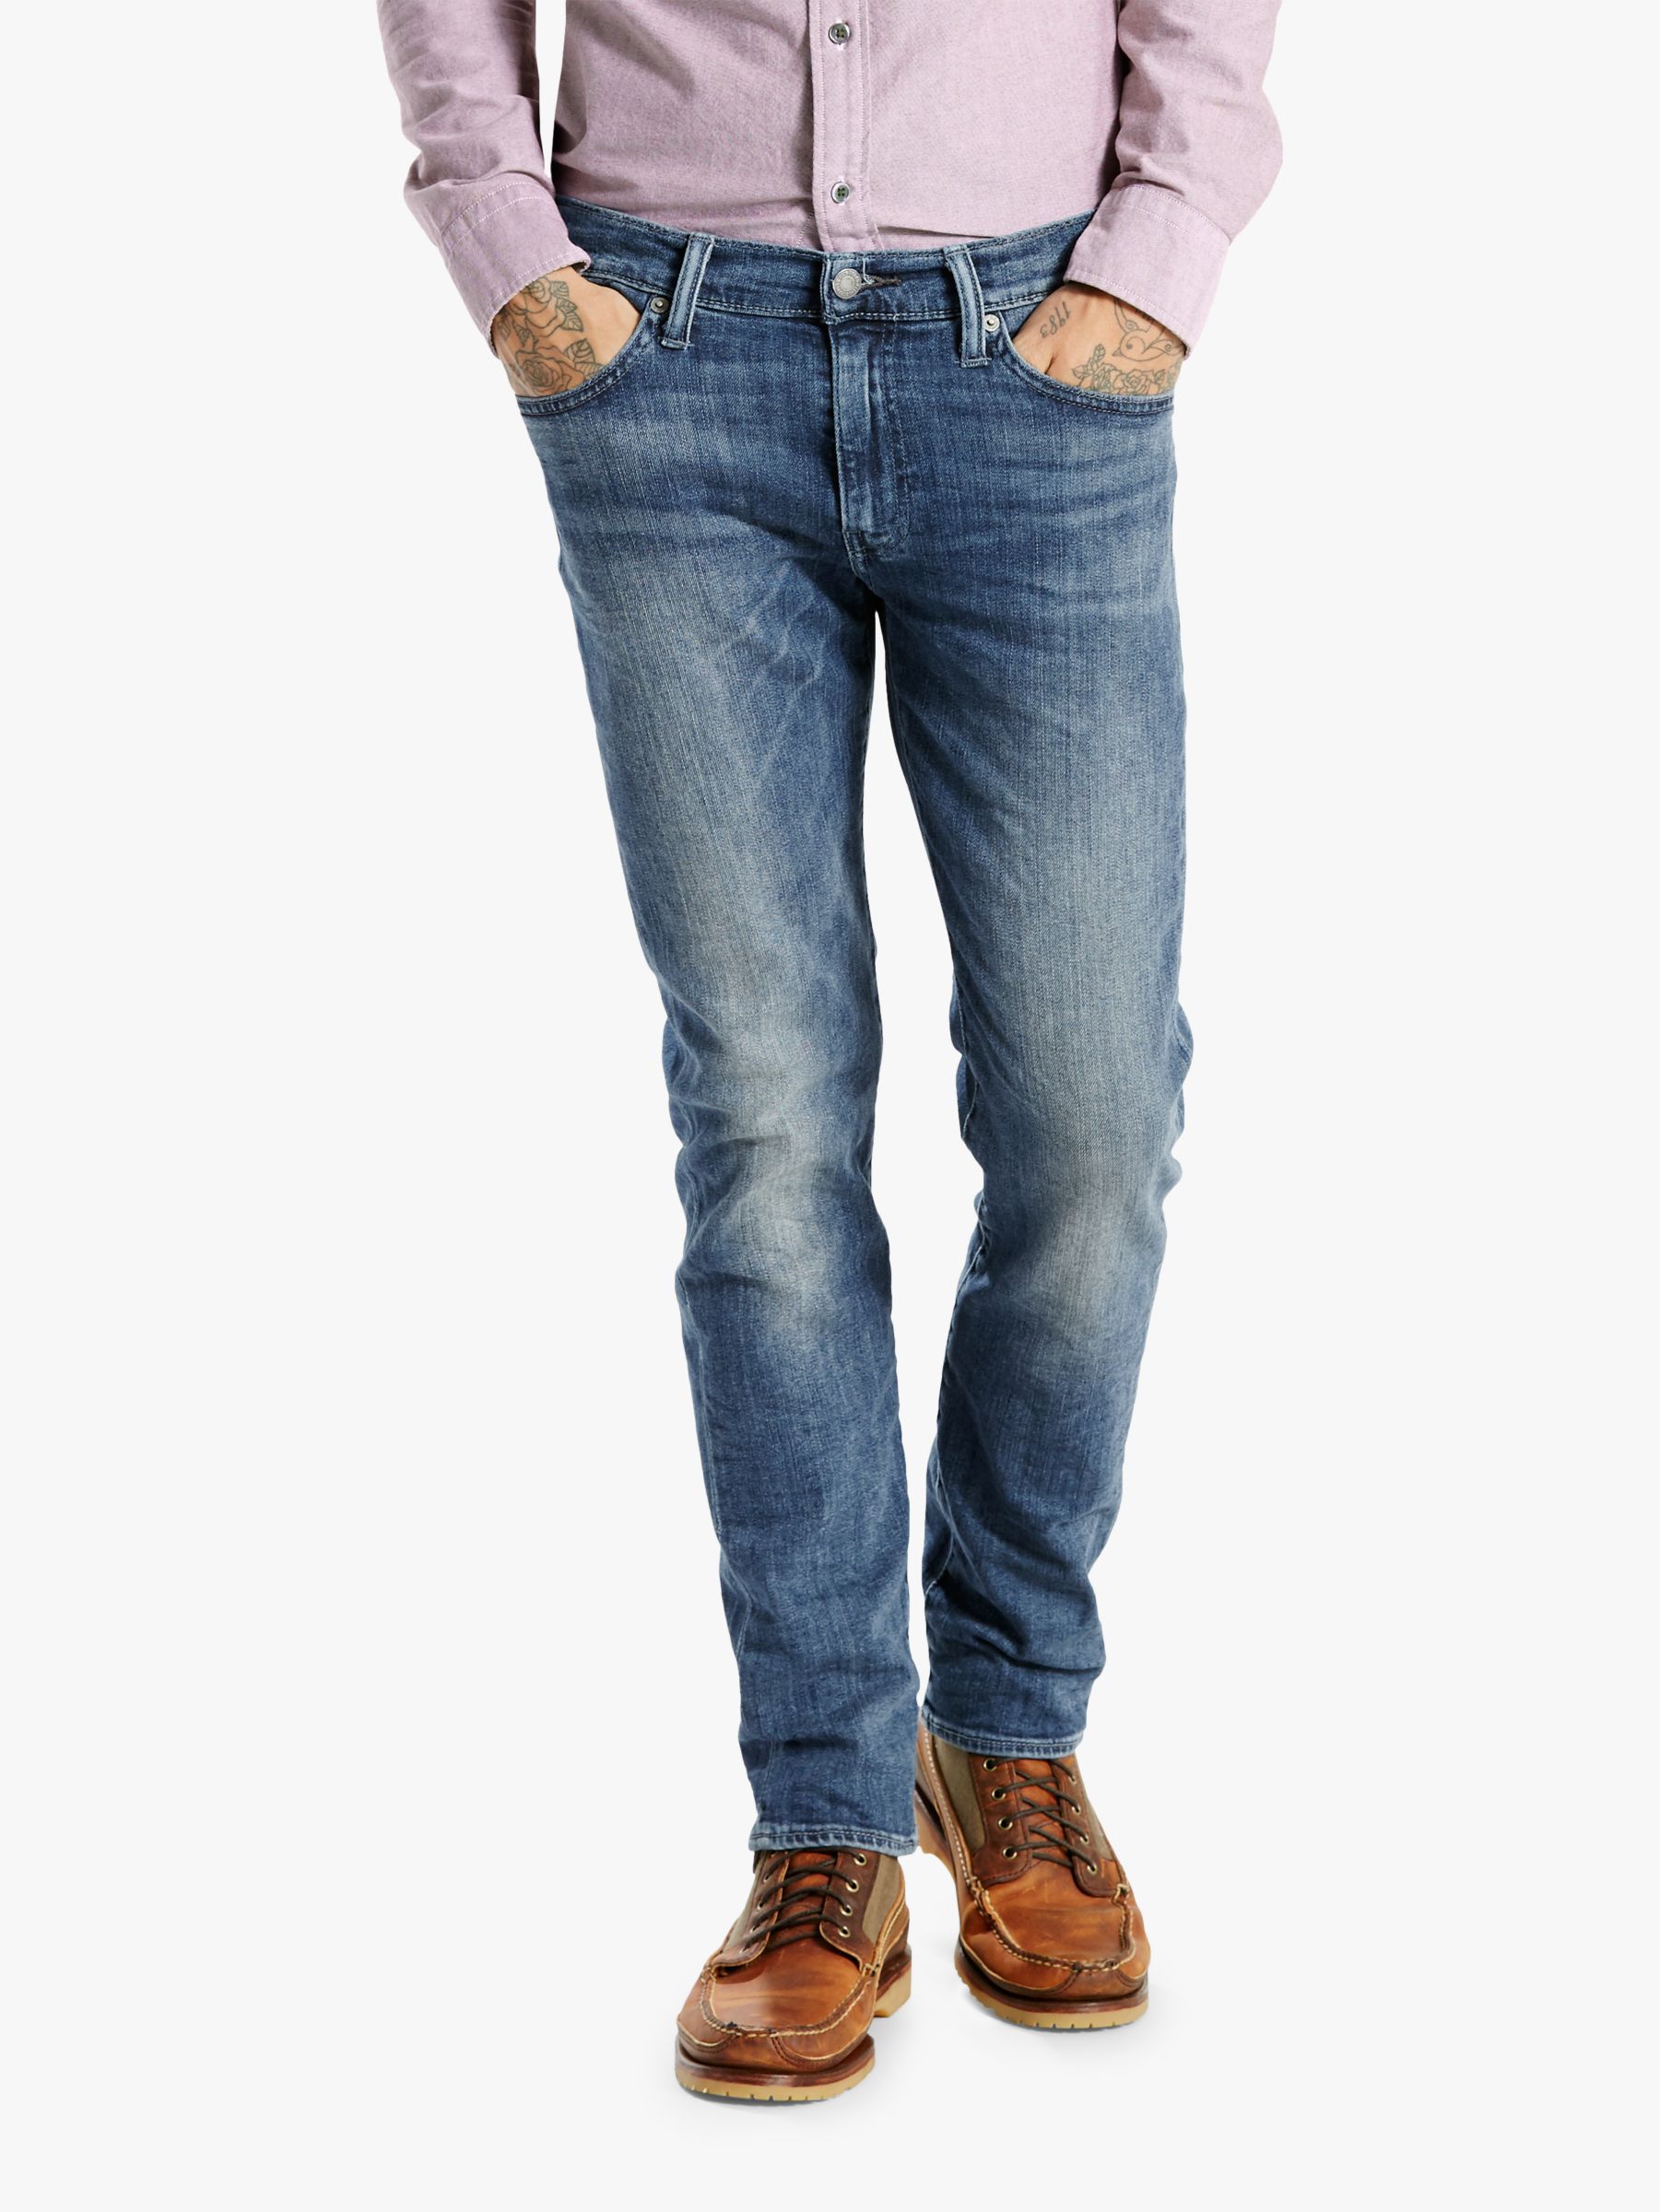 buy levi's 511 jeans online